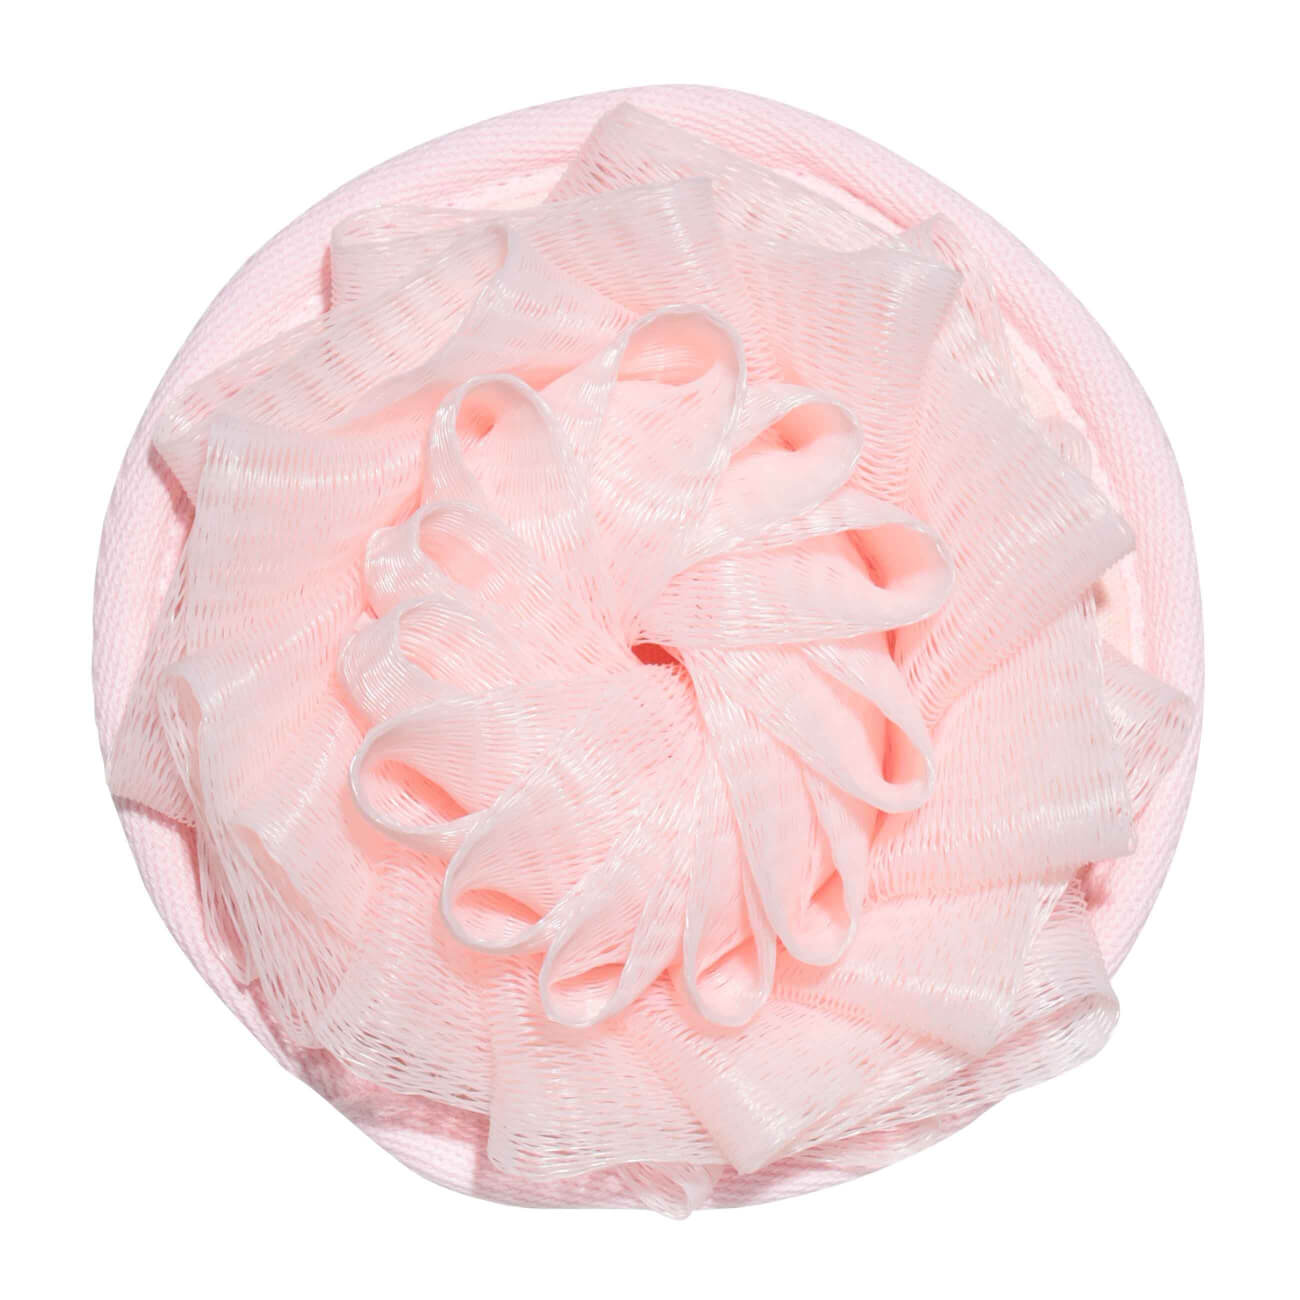 Мочалка для мытья тела, 12 см, с держателем, полиэстер/нейлон, пудровая, Полубант, Glamor пустышка цельносиликоновая с держателем в контейнере от 0 мес розовый